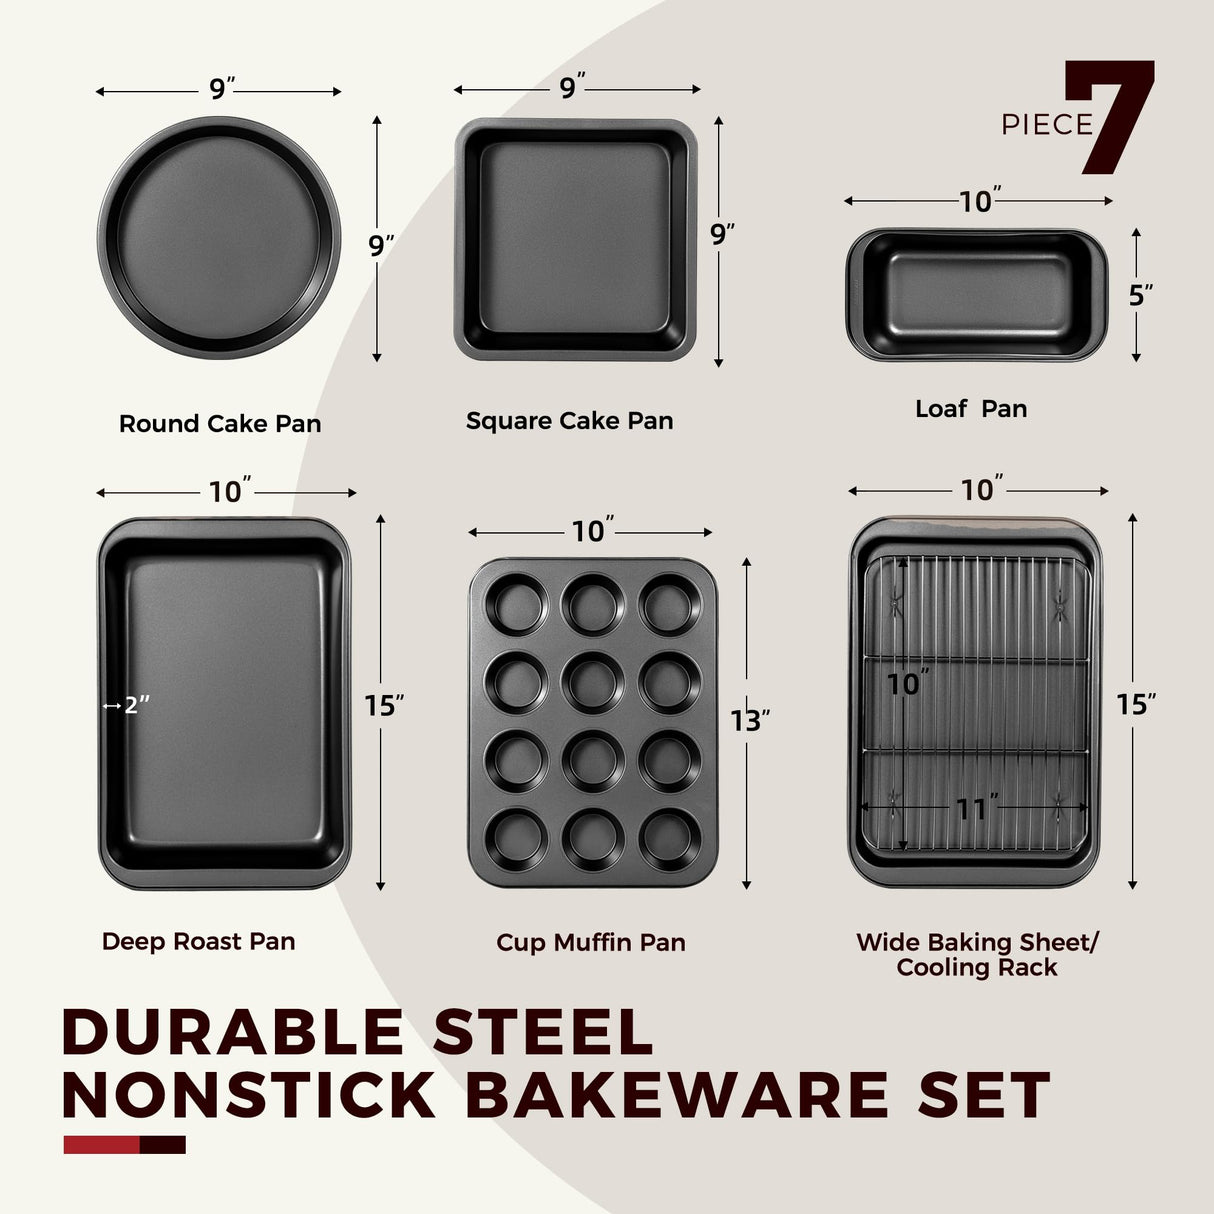 KITESSENSU Baking Pans Sets, Nonstick Bakeware Sets 7-Piece with Round/Square Cake Pan, Loaf Pan, Muffin Pan, Cookie Sheet, Roast Pan, Cooling Rack, Carbon Steel Bake Set